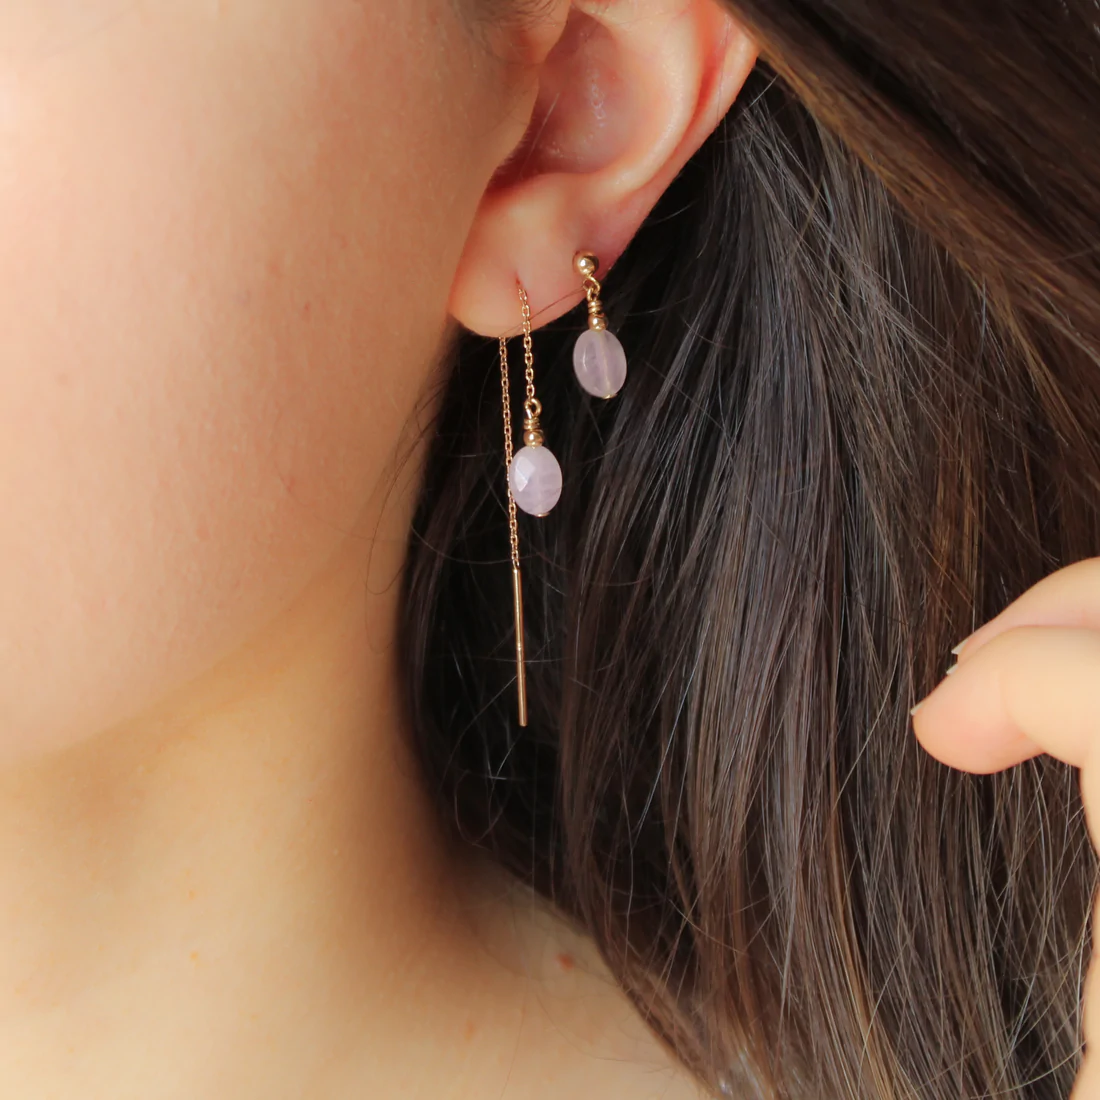 boucles d oreilles femme pendantes quartz rose idee cadeau original leonie et france eshop mode et maison made in france